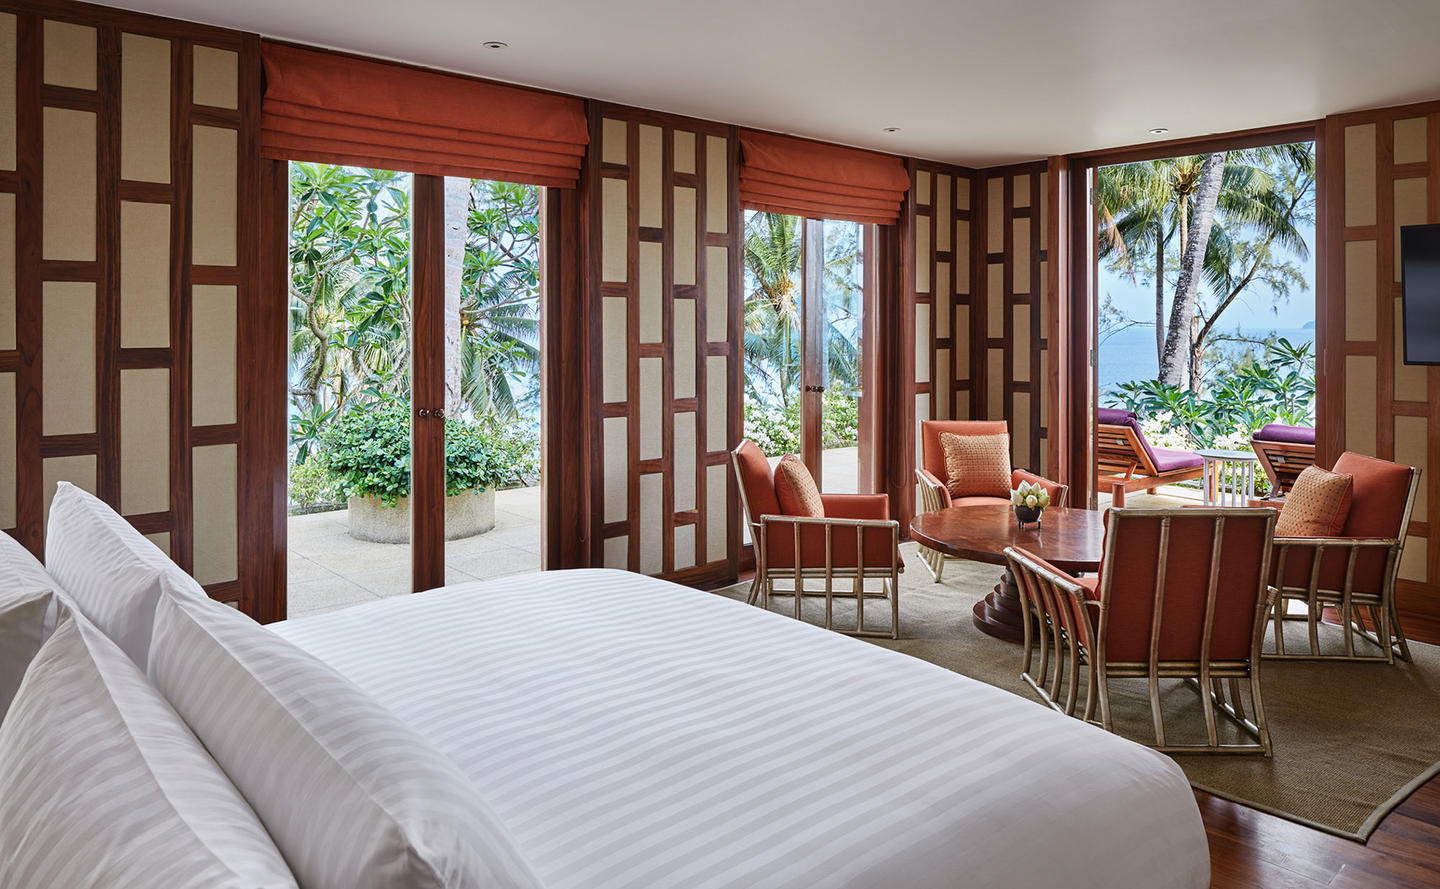 Amanpuri Photo Gallery Explore Our Luxury Hotel Phuket Aman 7775